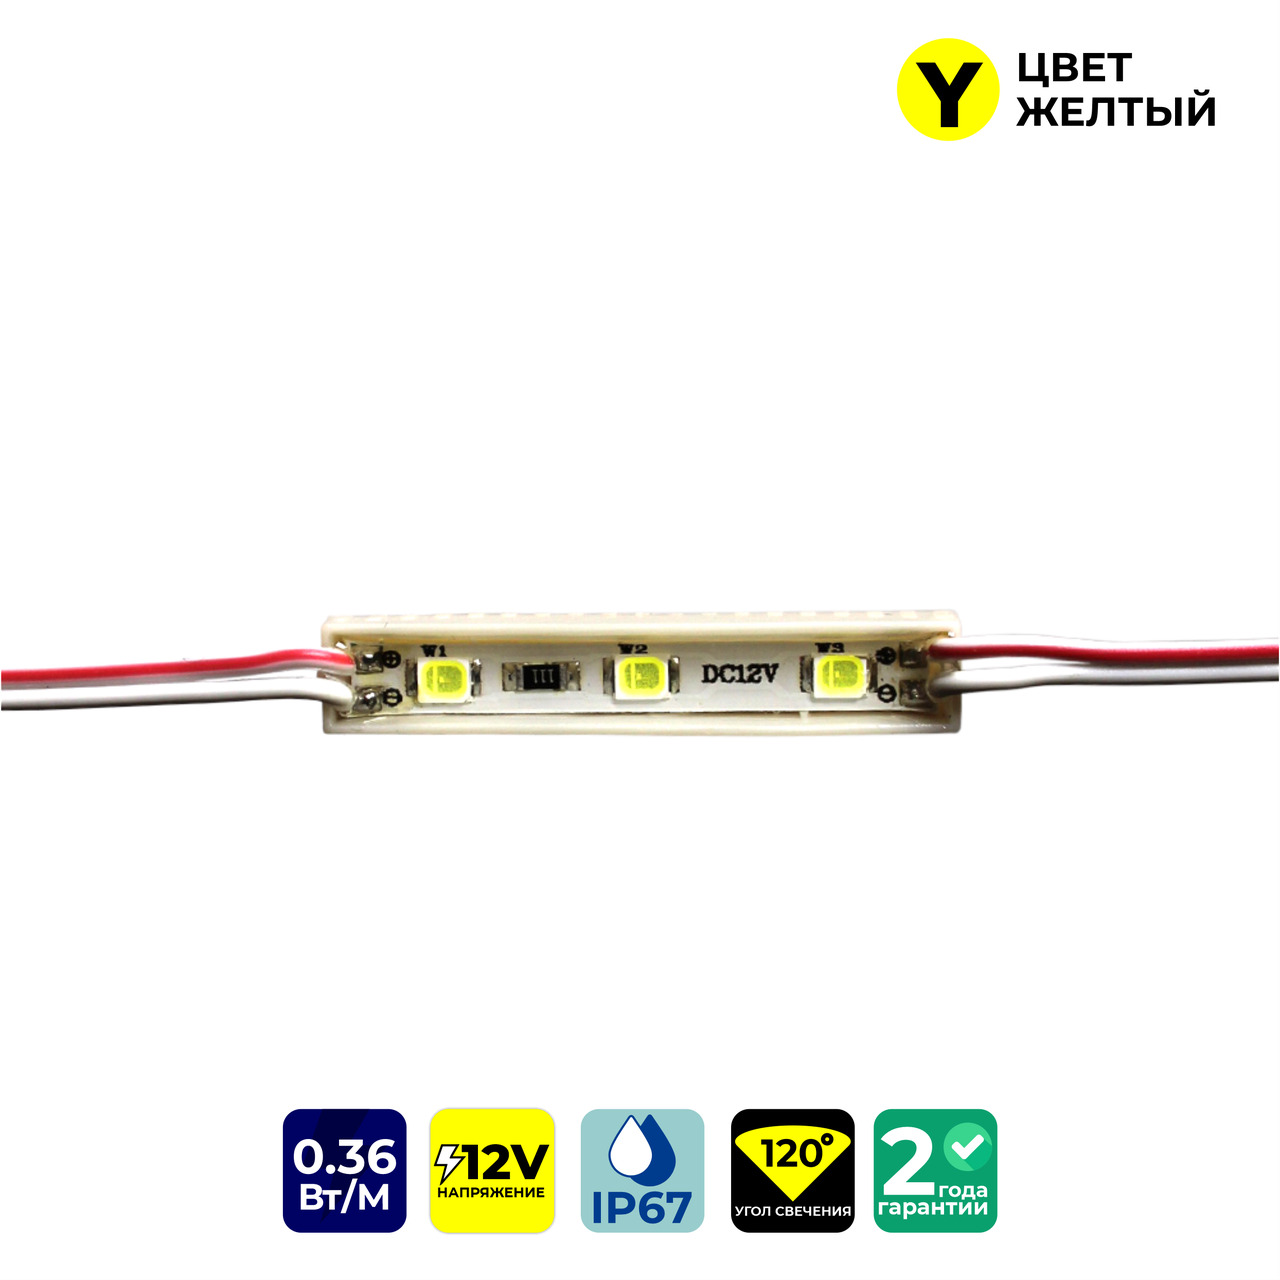 Светодиодные модули FT0839Y3SMD2835 (IP67) 0,36W, цвет - желтый